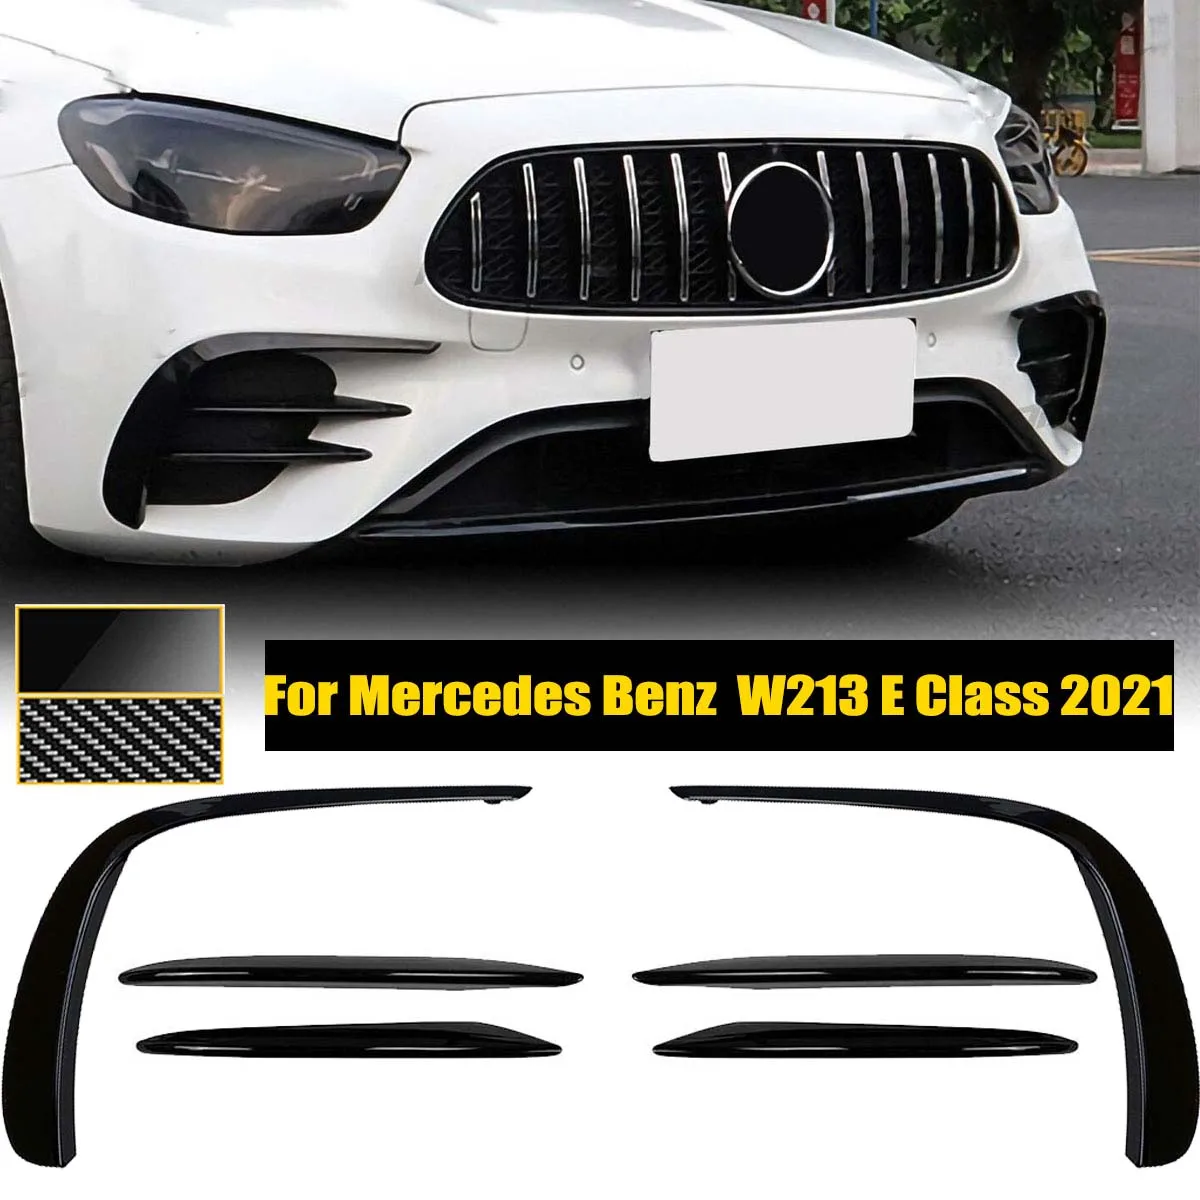 Front Bumper Canards Fog Light Cover Trim Sticker Splitter For Mercedes Benz E Class W213 E260 E300 E53 AMG 2021 Car Accessories